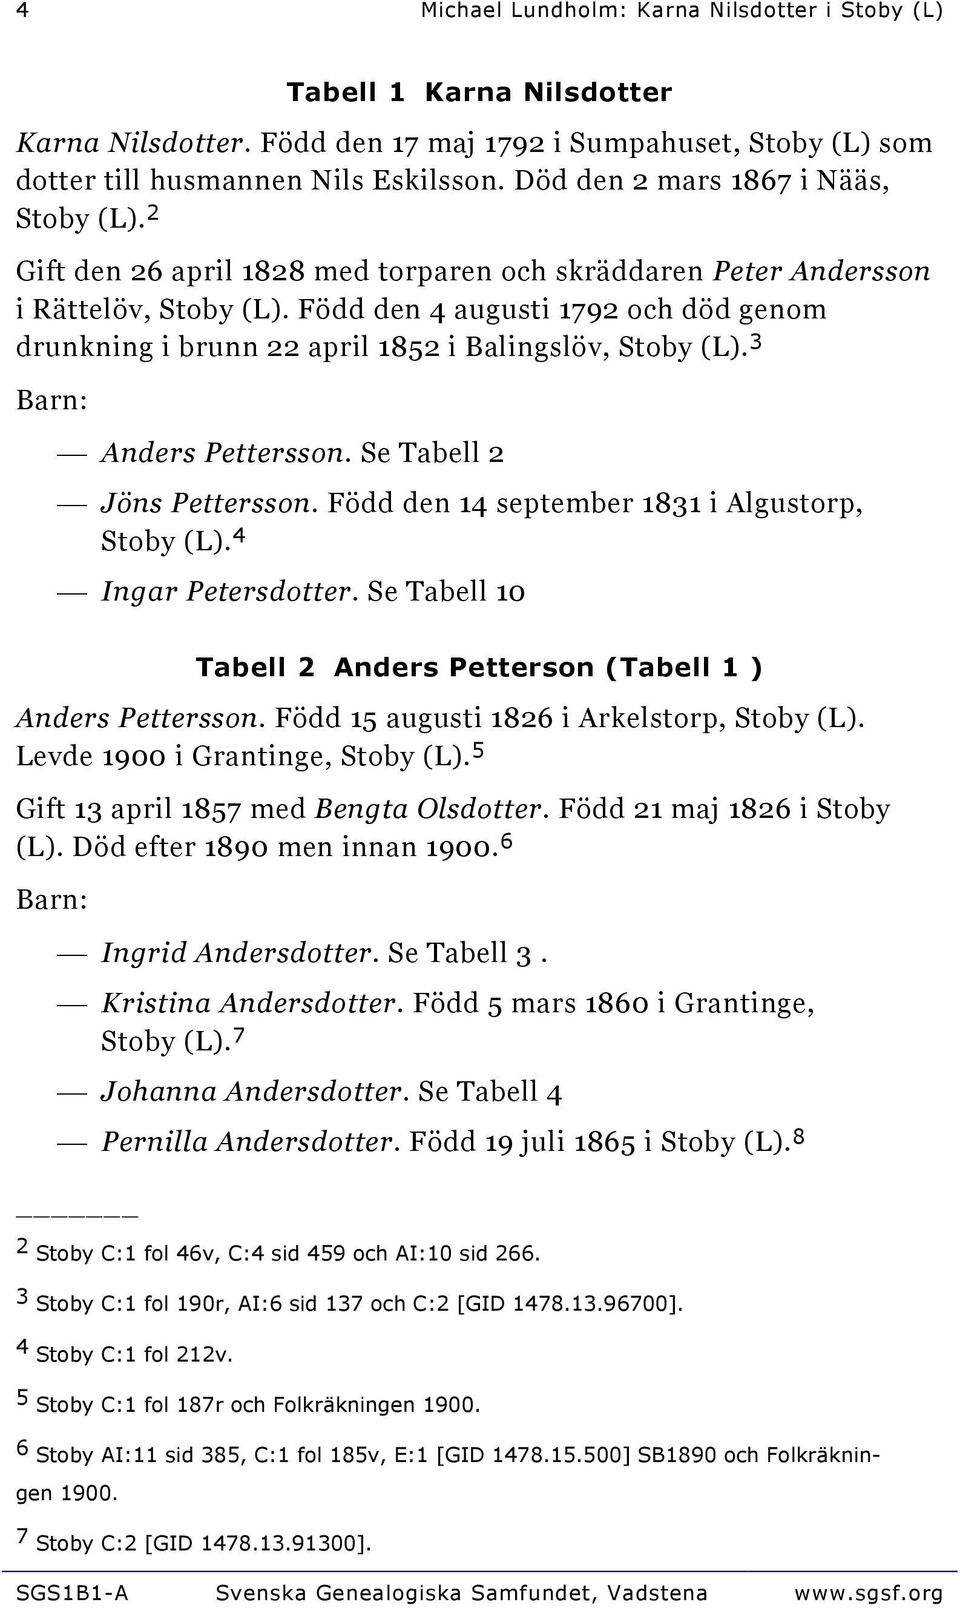 Född den 4 augusti 1792 och död genom drunkning i brunn 22 april 1852 i Balingslöv, Stoby (L). 3 Anders Pettersson. Se Tabell 2 Jöns Pettersson. Född den 14 september 1831 i Algustorp, Stoby (L).